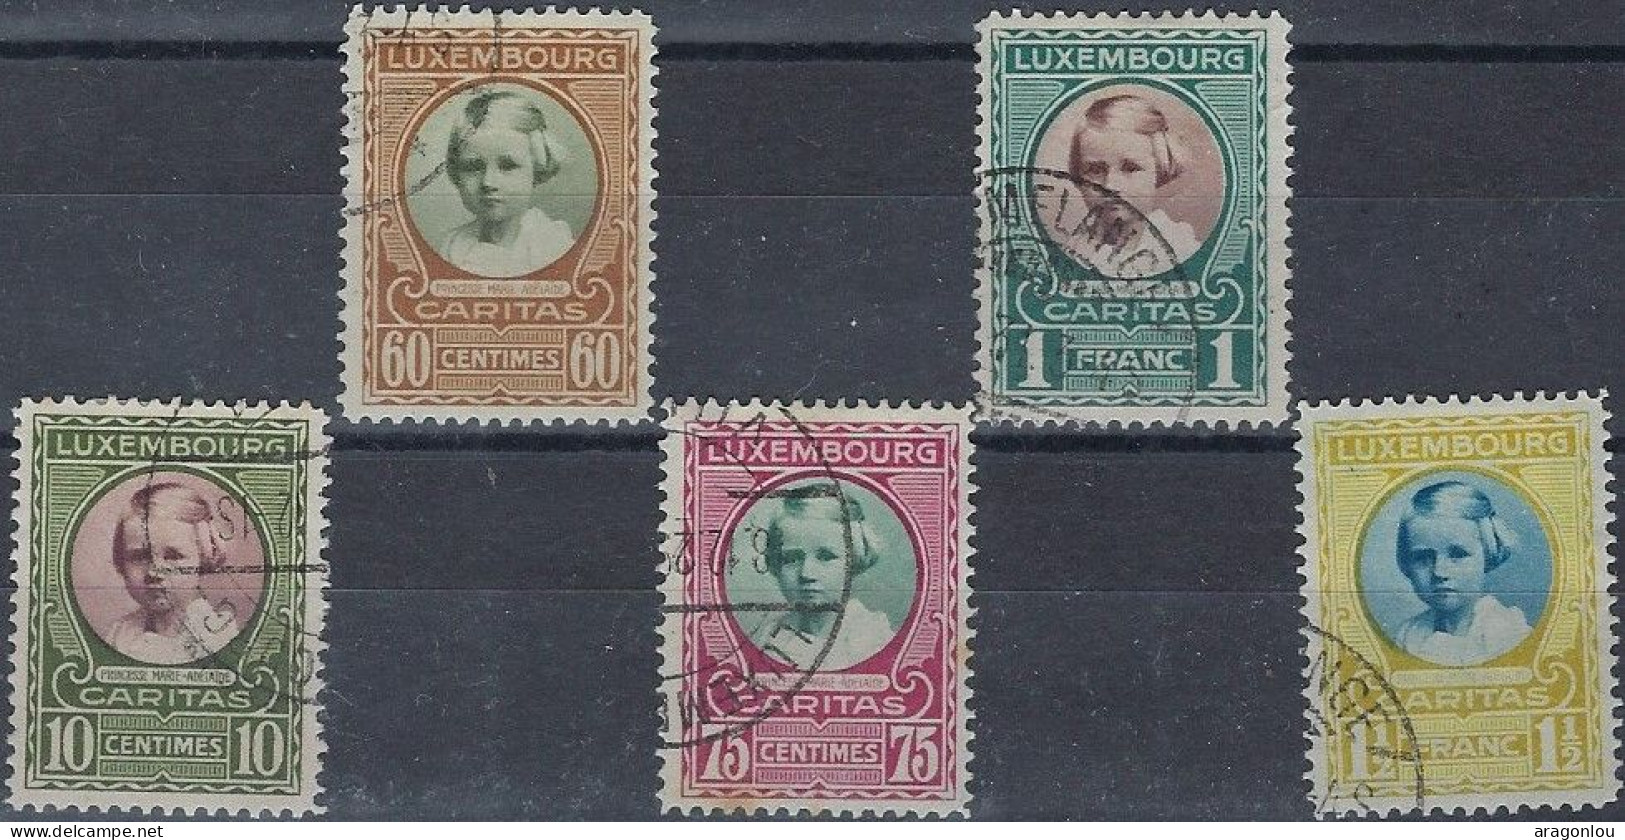 Luxembourg - Luxemburg -  Timbre  Série   1928   °   Marie - Adélaïde    VC. 60,- - Gebraucht